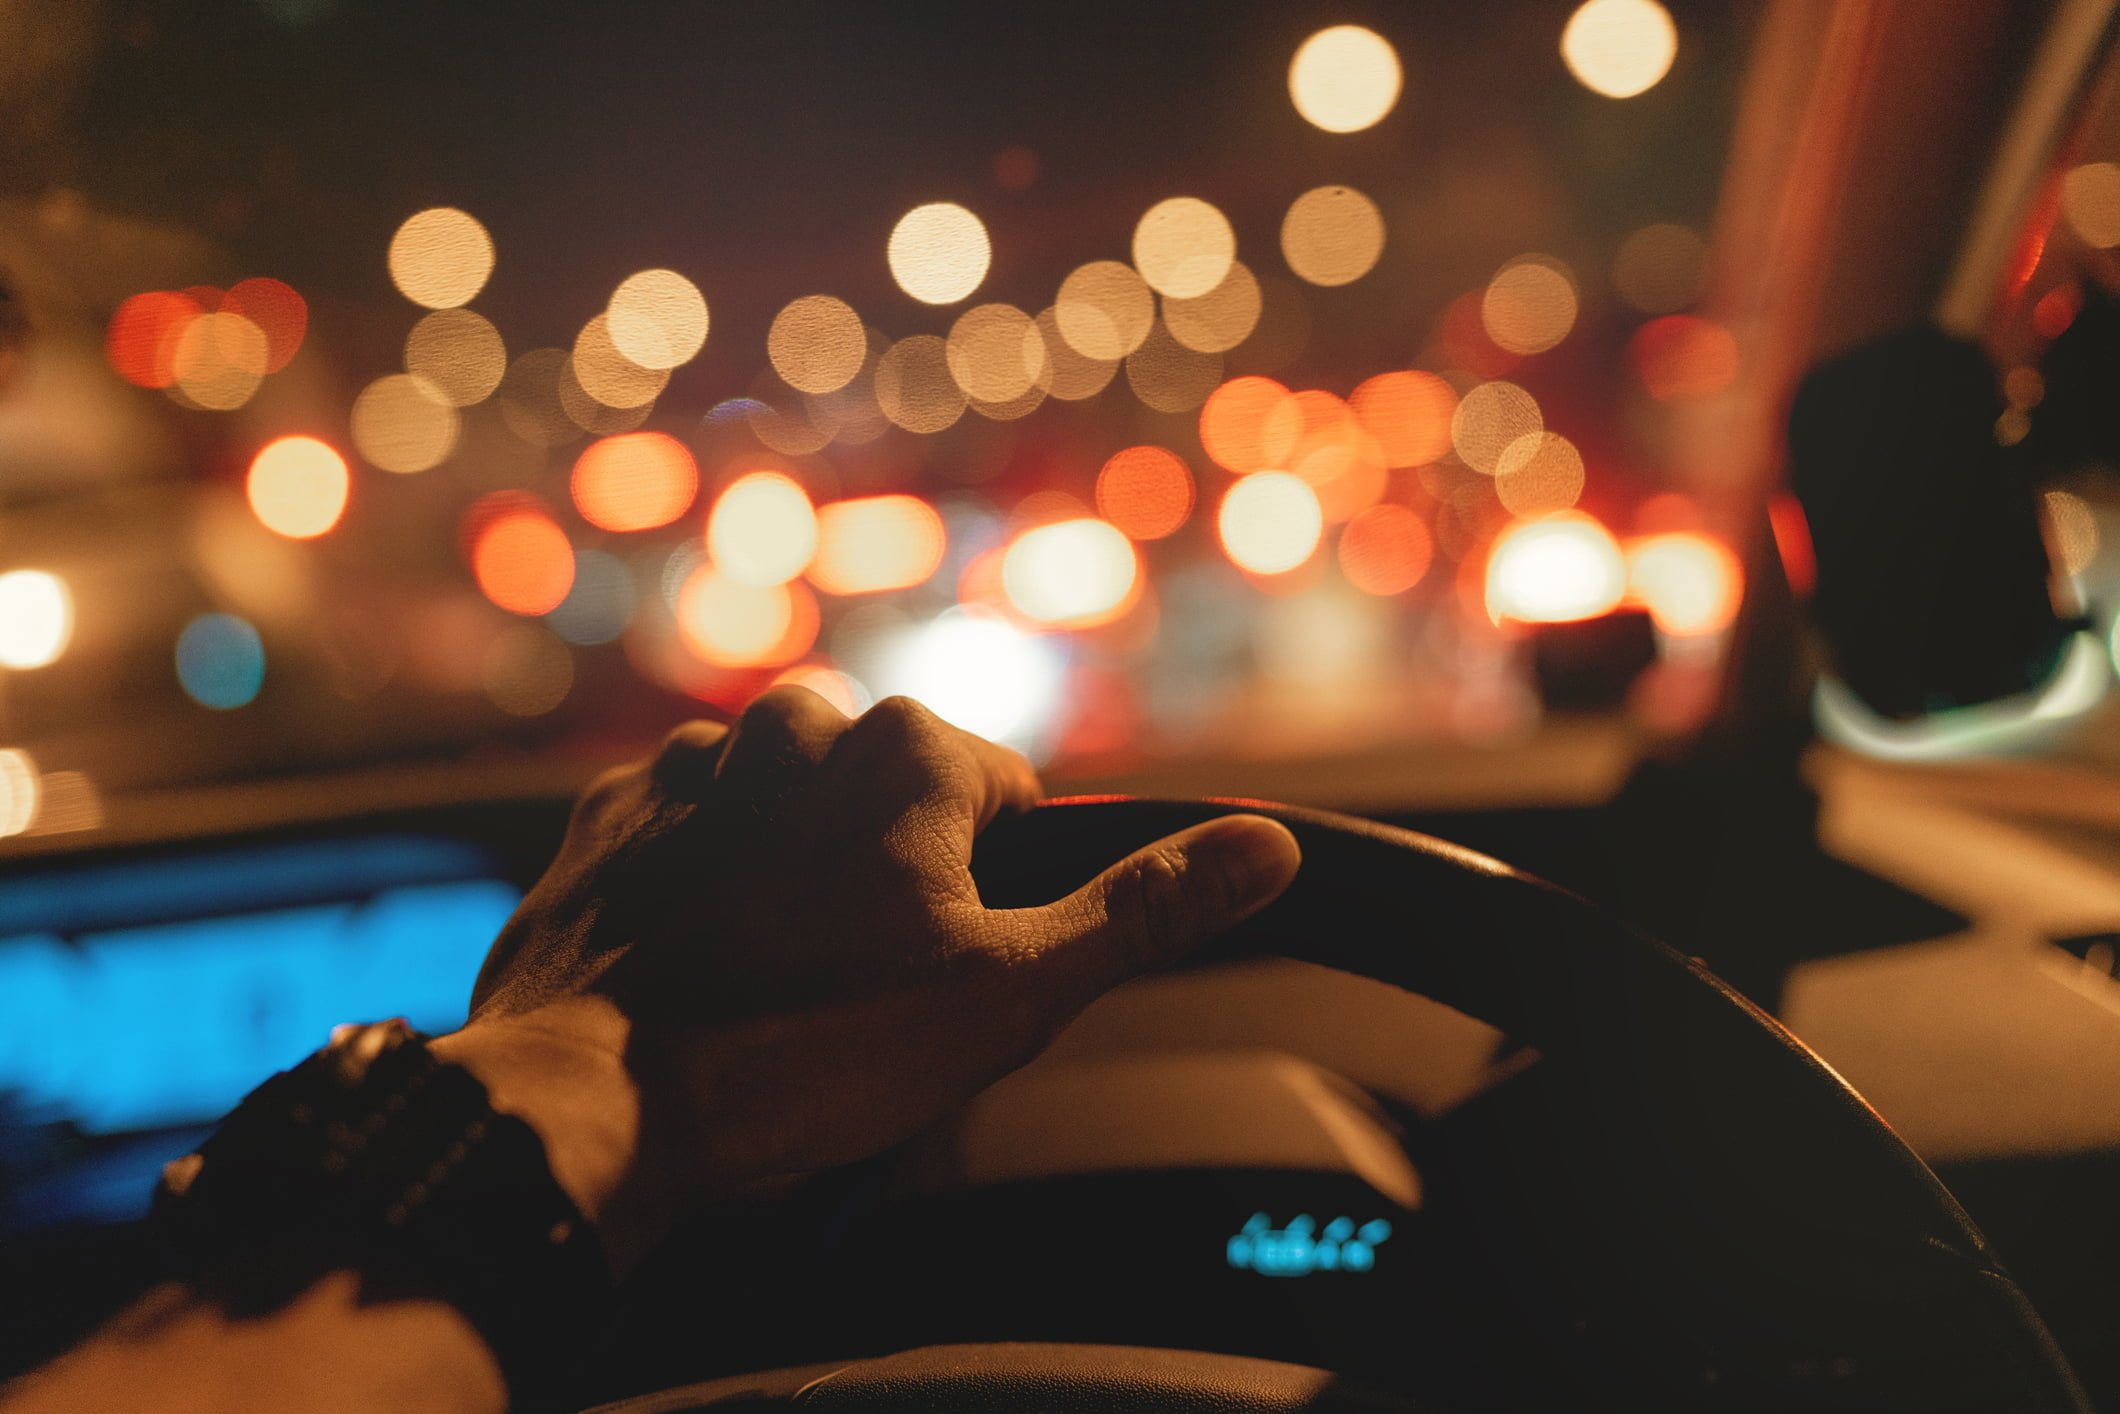 Consejos visuales para conducir de noche sin riesgo